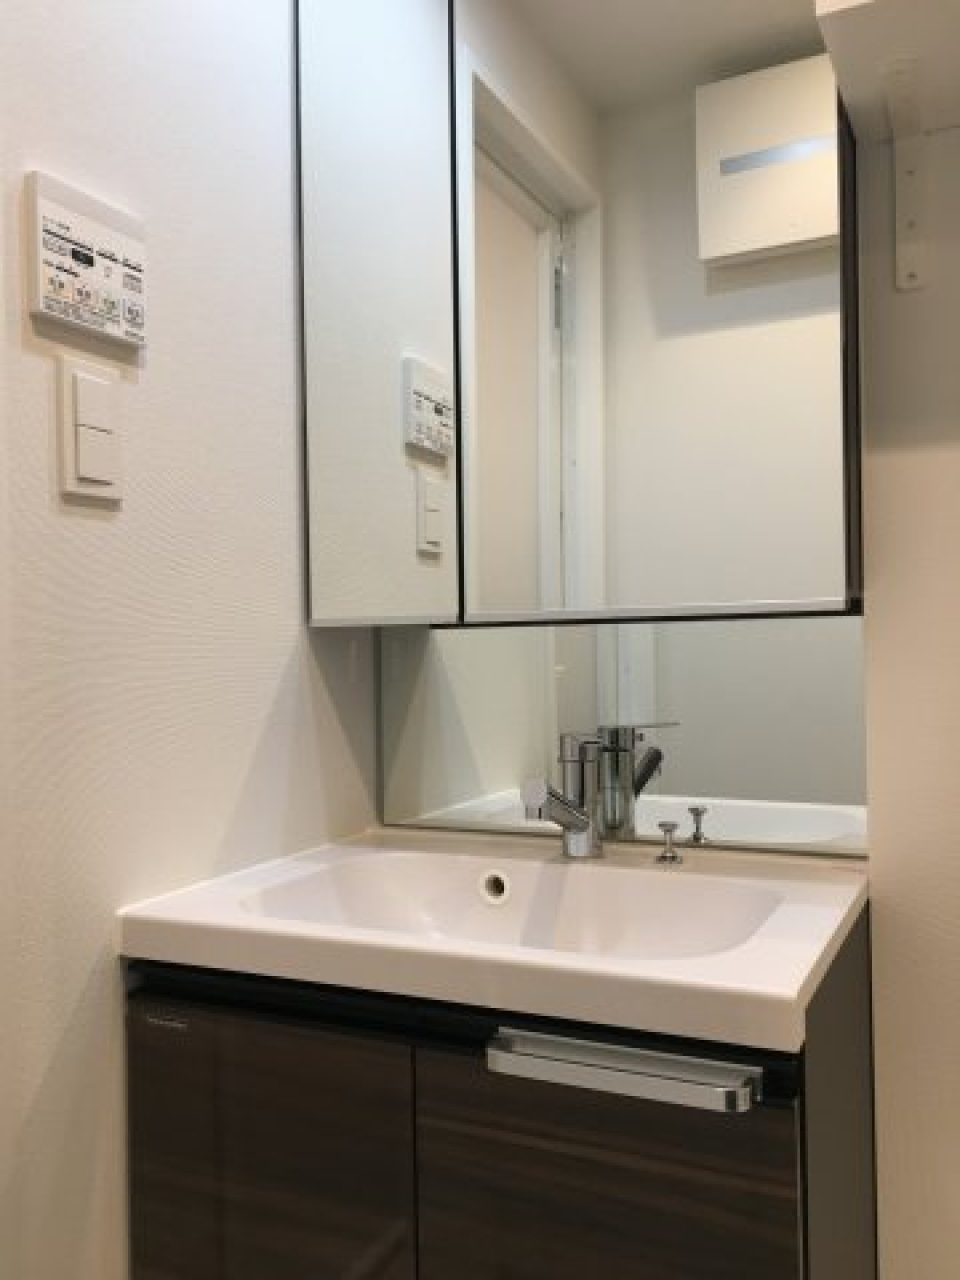 洗面台は収納もたっぷりできそうなのと、鏡が大きいのが特徴です。